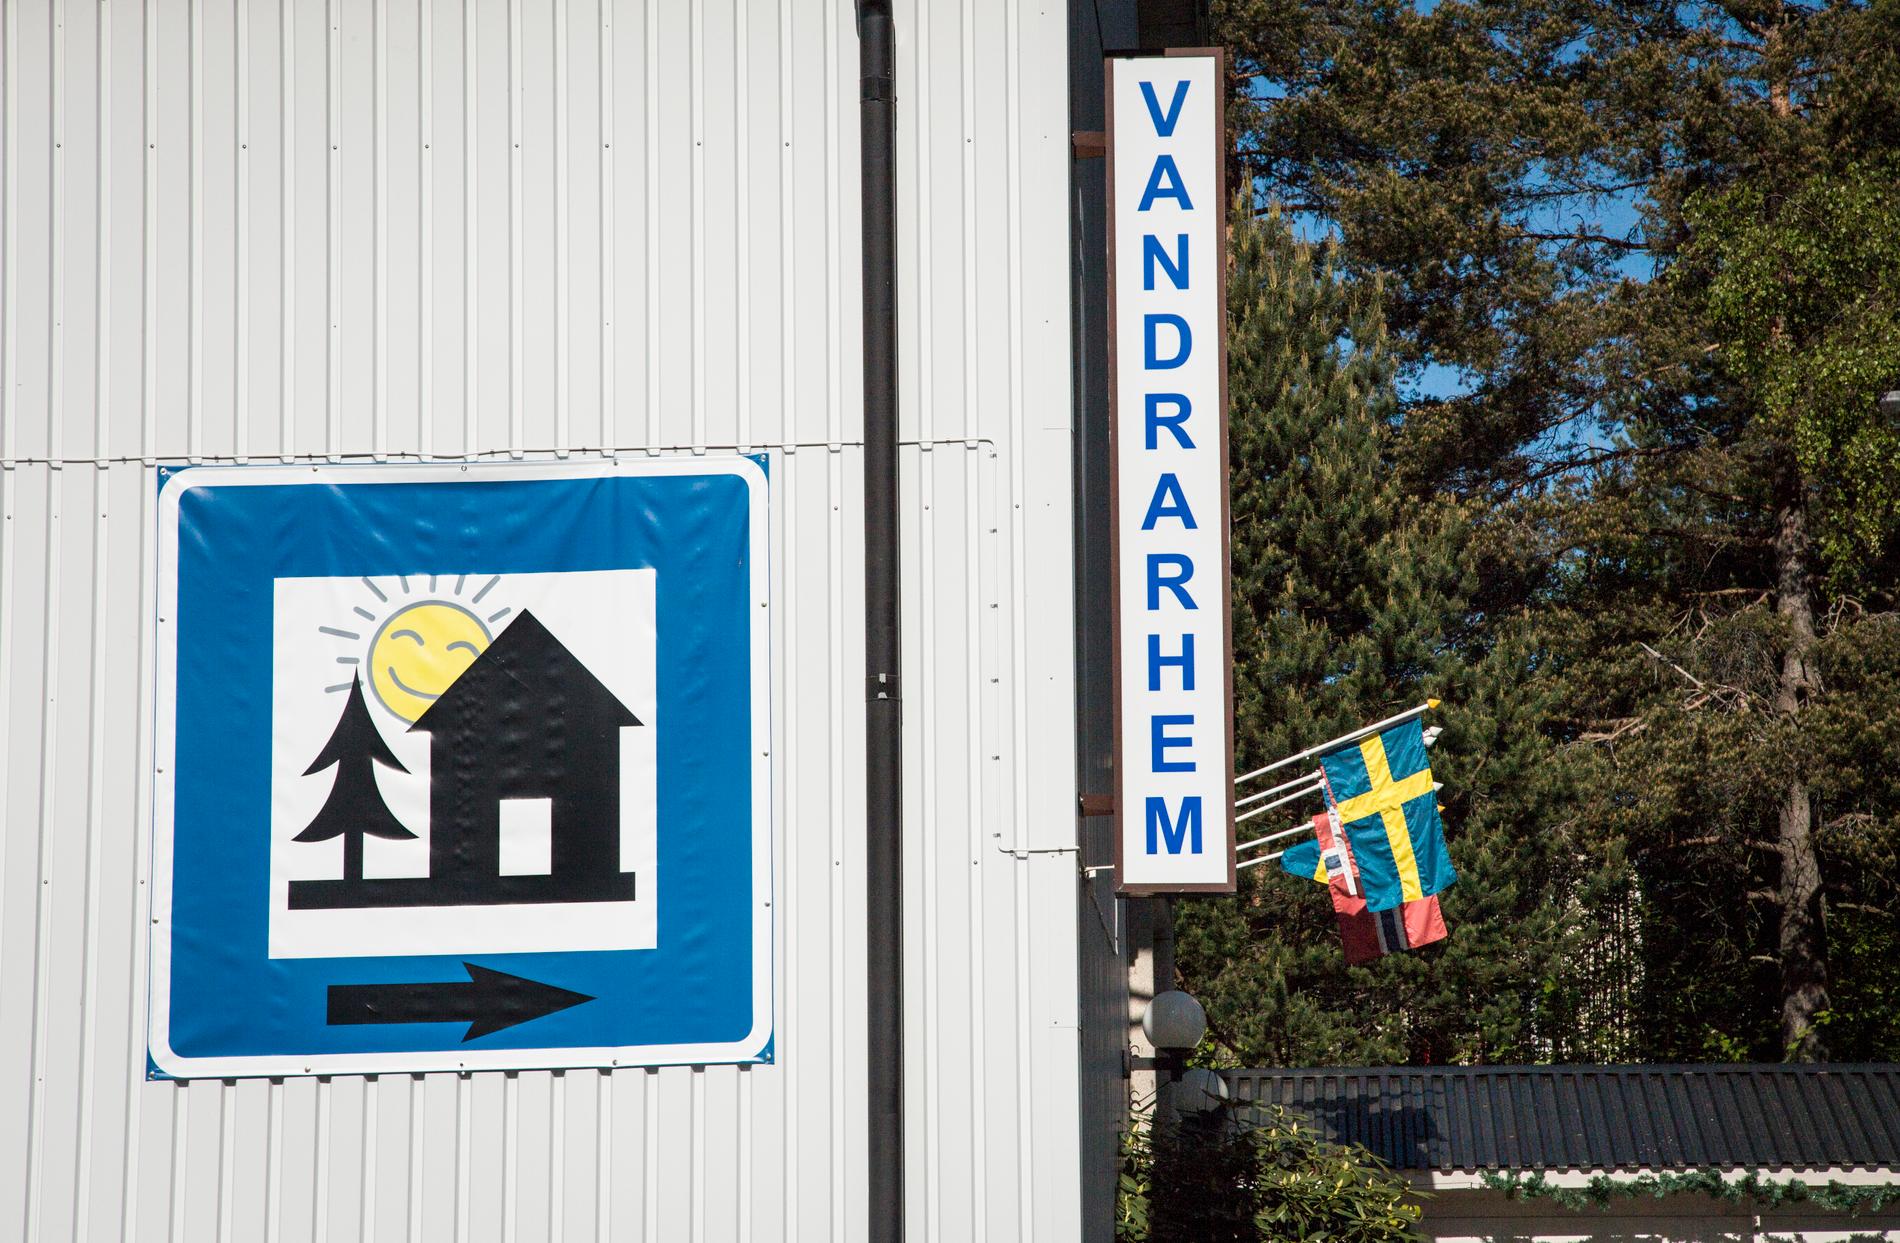 En man döms till fängelse för att ha drivit en prostitutionsverksamhet på ett vandrarhem i Sundsvall. Vandrarhemmet på bilden har inget med artikeln att göra. Arkivbild.